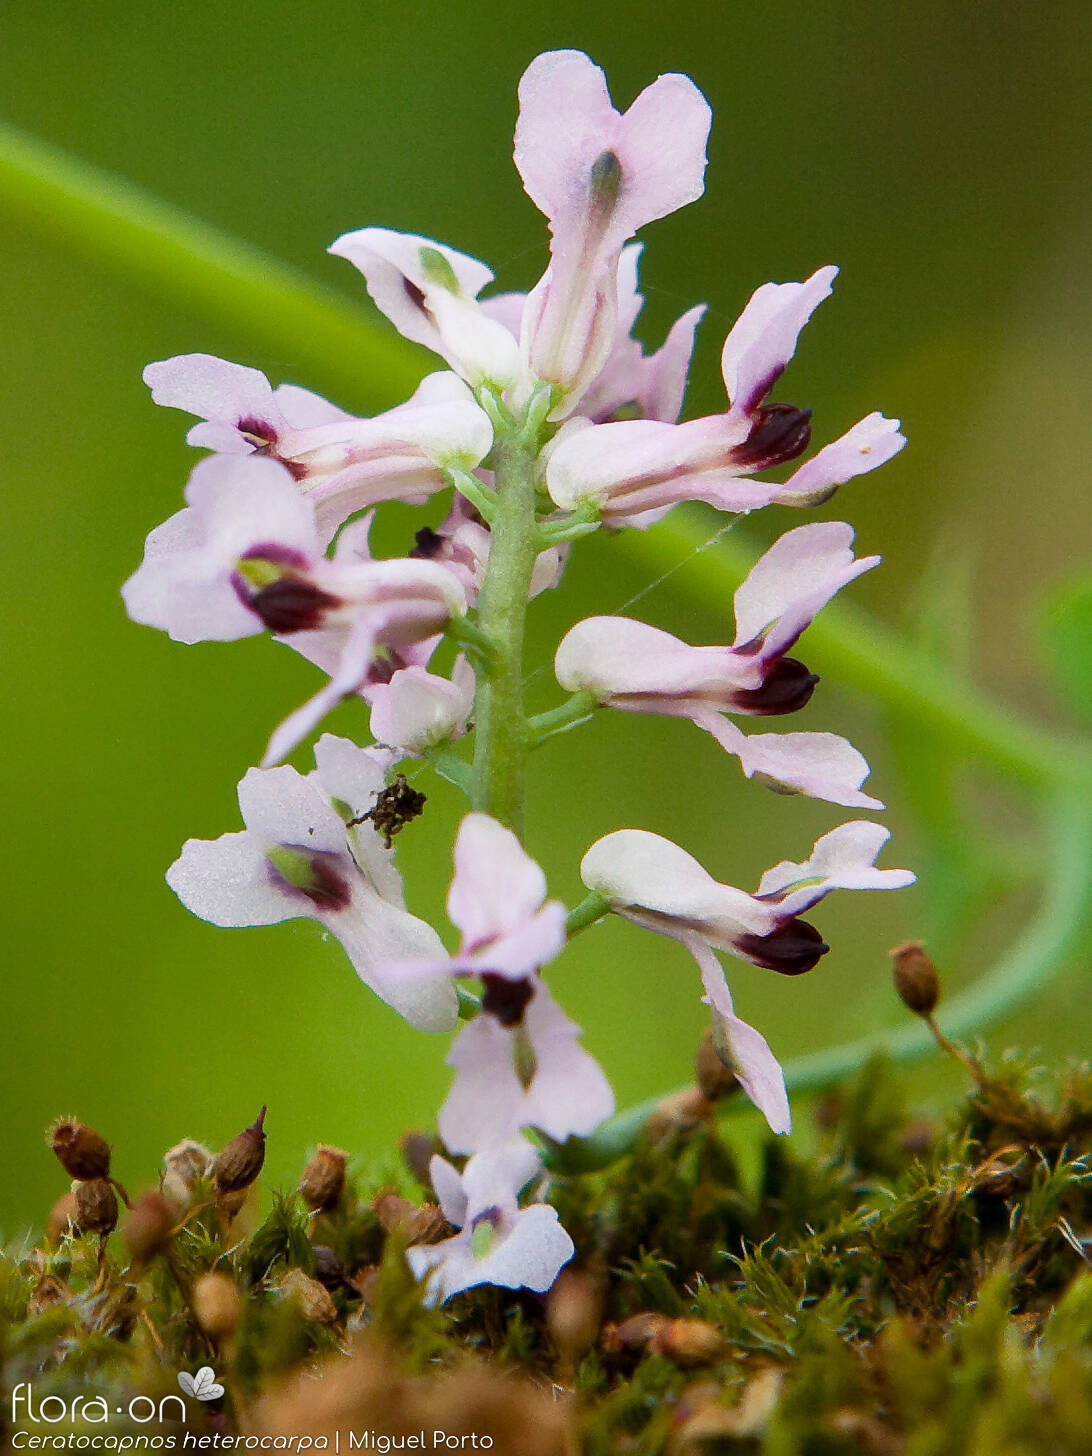 Ceratocapnos heterocarpa - Flor (close-up) | Miguel Porto; CC BY-NC 4.0